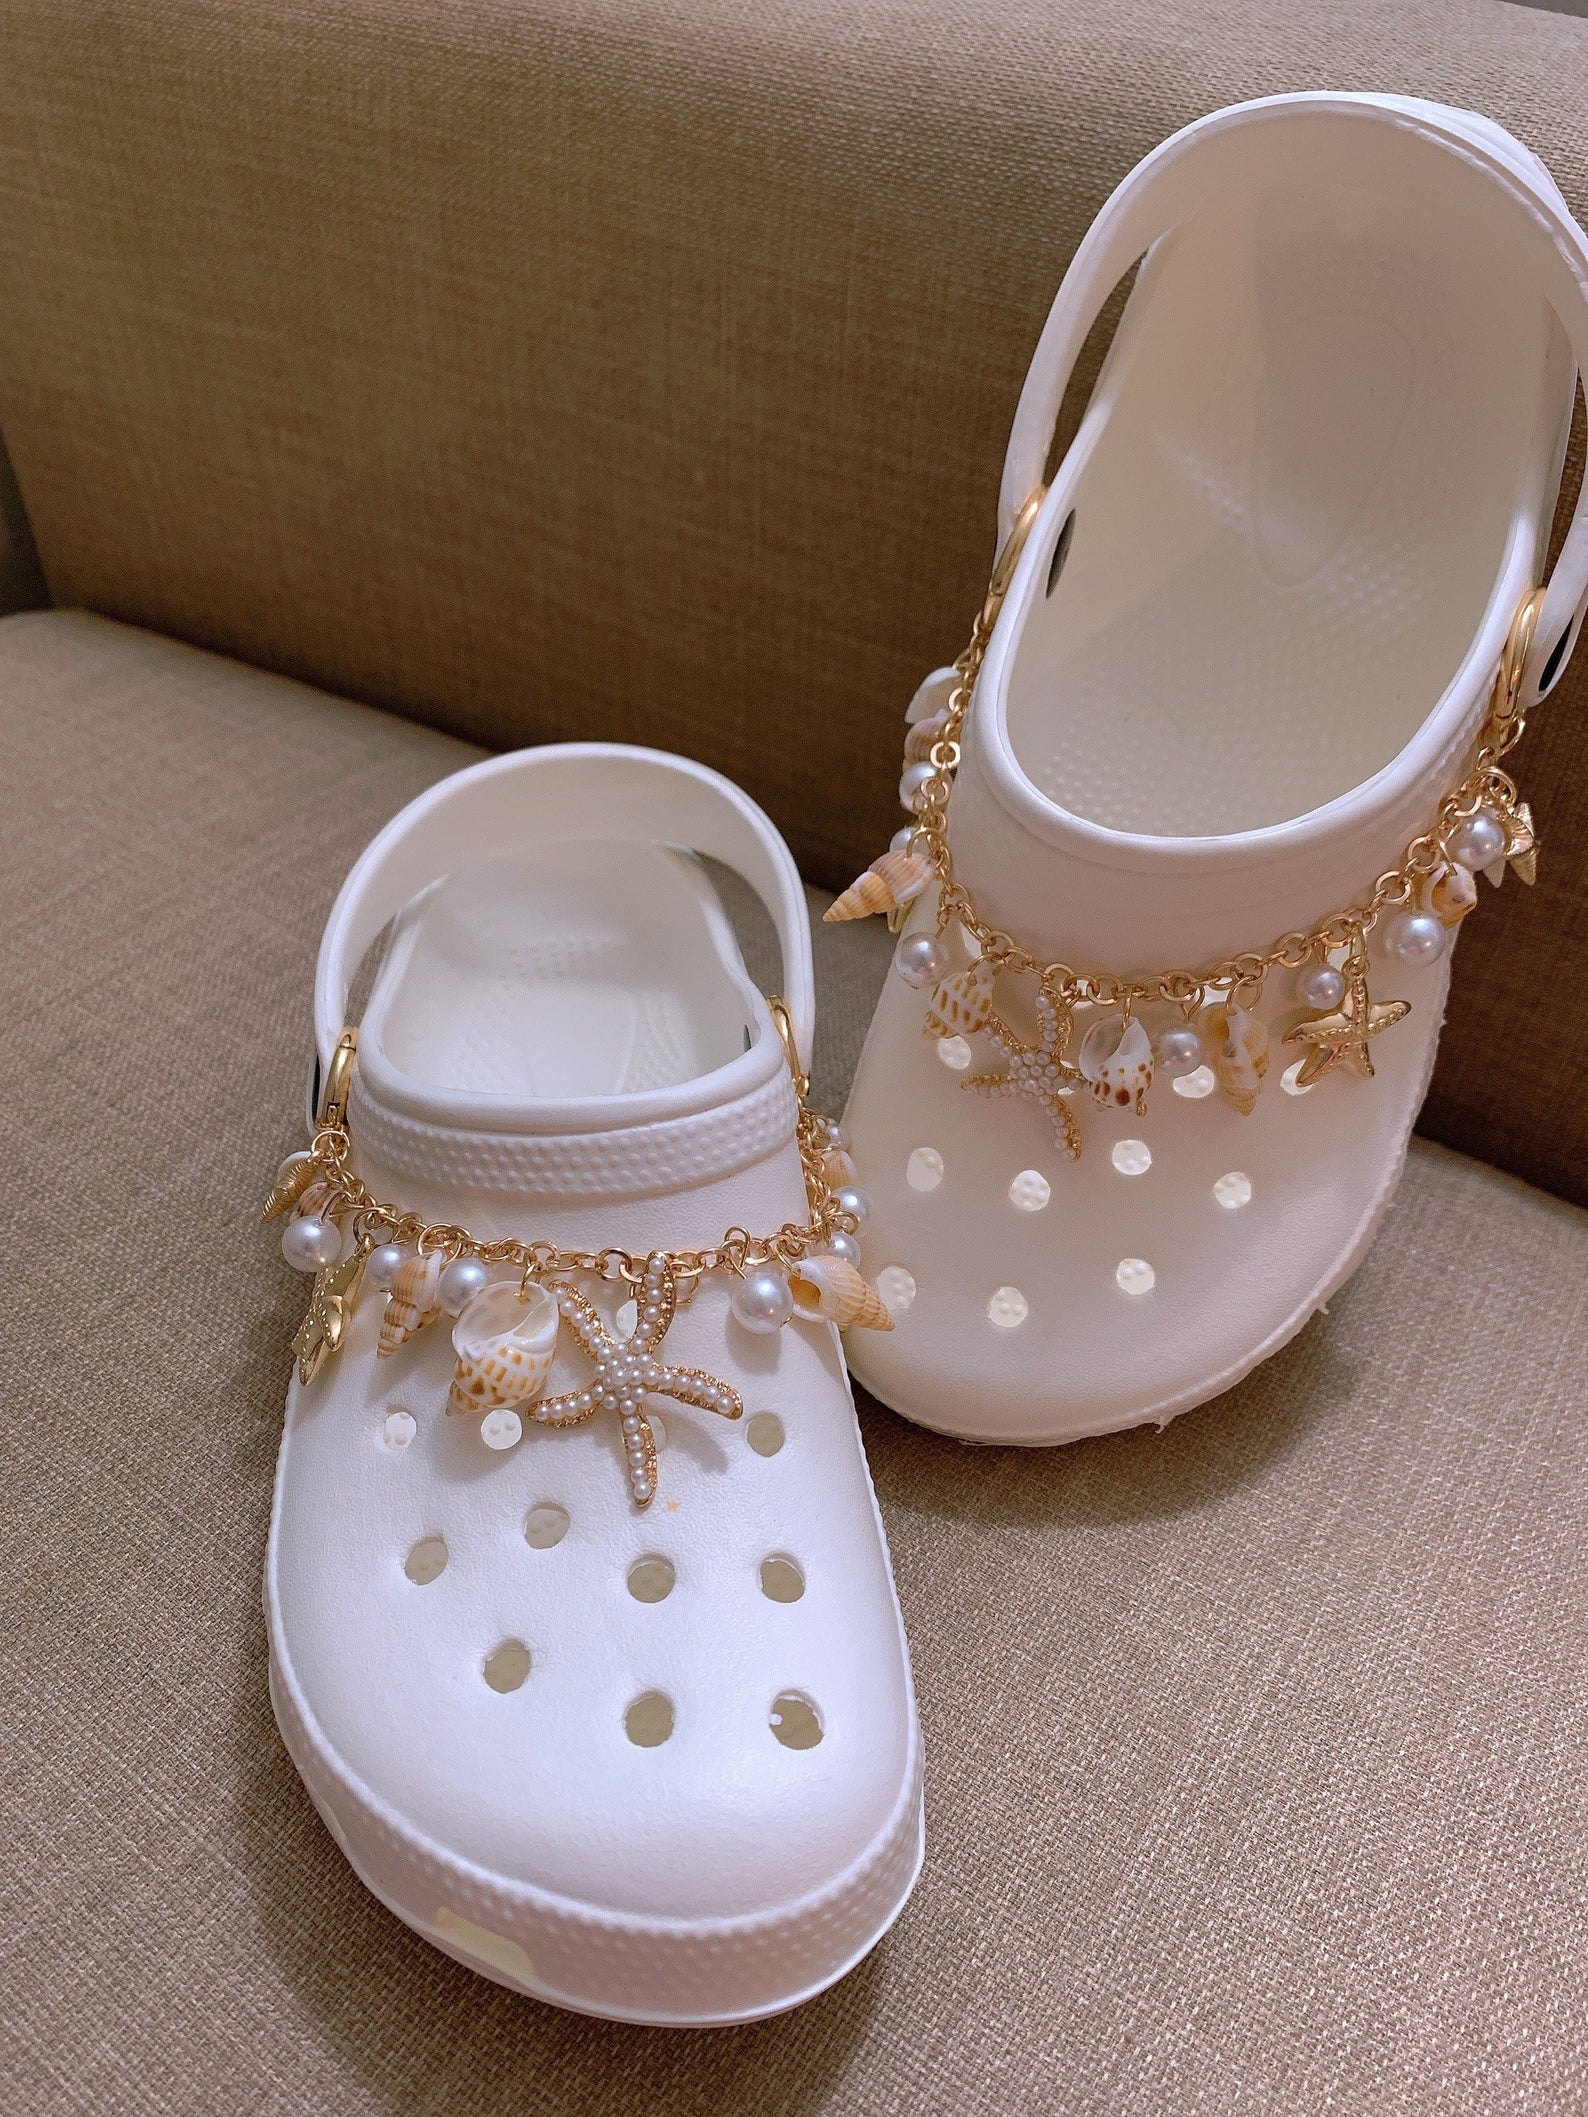 Chanel Crocs Sandals #crocs #crocssandals #crocscharms #chanel #glam #